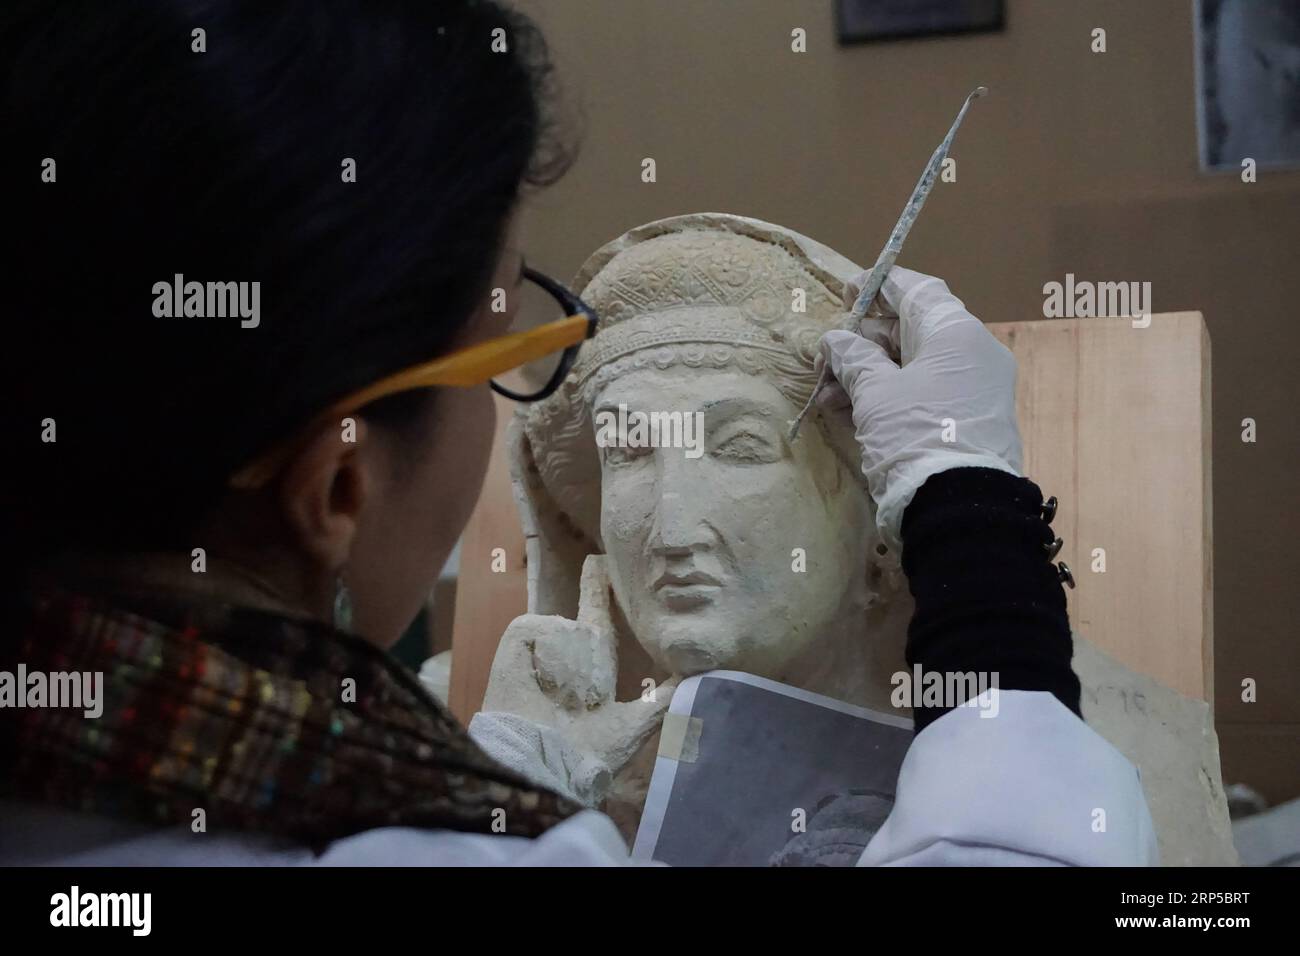 (181207) -- DAMASKUS, 7. Dezember 2018 -- Heba Jouma, eine Restauratorin und Restauratorin der antiken Stadt Palmyra in Syrien und Mitglied eines syrischen Experten-Teams für Restaurierung, arbeitet am 5. Dezember 2018 im Nationalen Museum von Damaskus in Damaskus, Syrien. Heba Jouma arbeitet daran, die antiken Merkmale der Skulpturen, die von der IS-Gruppe beschädigt wurden, zurückzubringen. Die IS-Gruppe hatte Palmyra während des mehr als siebenjährigen Krieges zweimal stürmt, kostbare archäologische Stätten wie Tempel und Gräber zerstört und Skulpturen in Stücke zerstückelt in der antiken Oasenstadt, die von der UNESCO A registriert ist Stockfoto